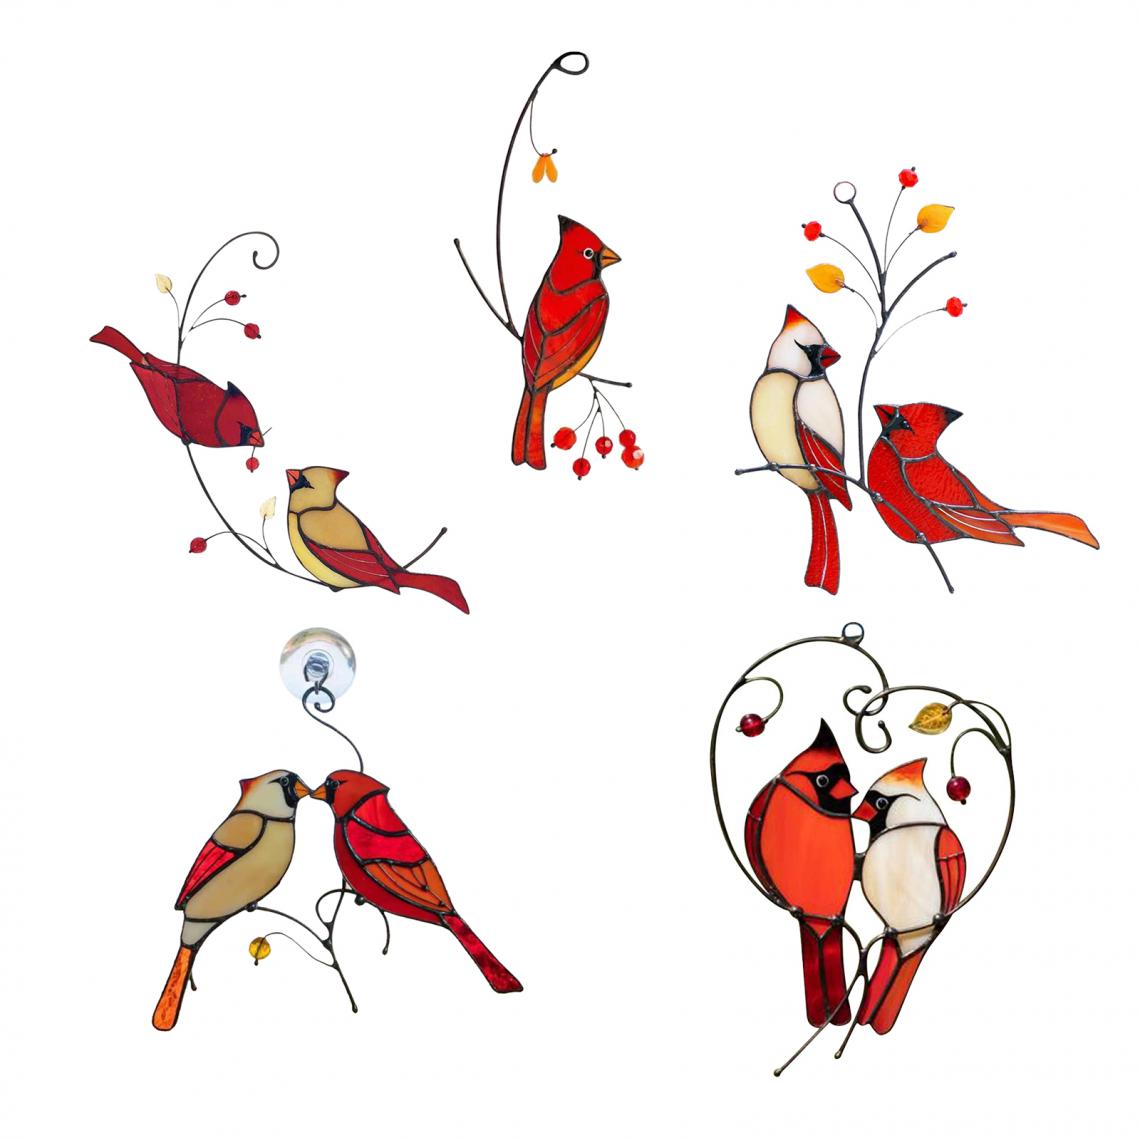 marque generique - 5 Pièces Tenture Murale Cardinal Sculpture Oeuvre Décor Oiseau Ornements Alliage - Petite déco d'exterieur